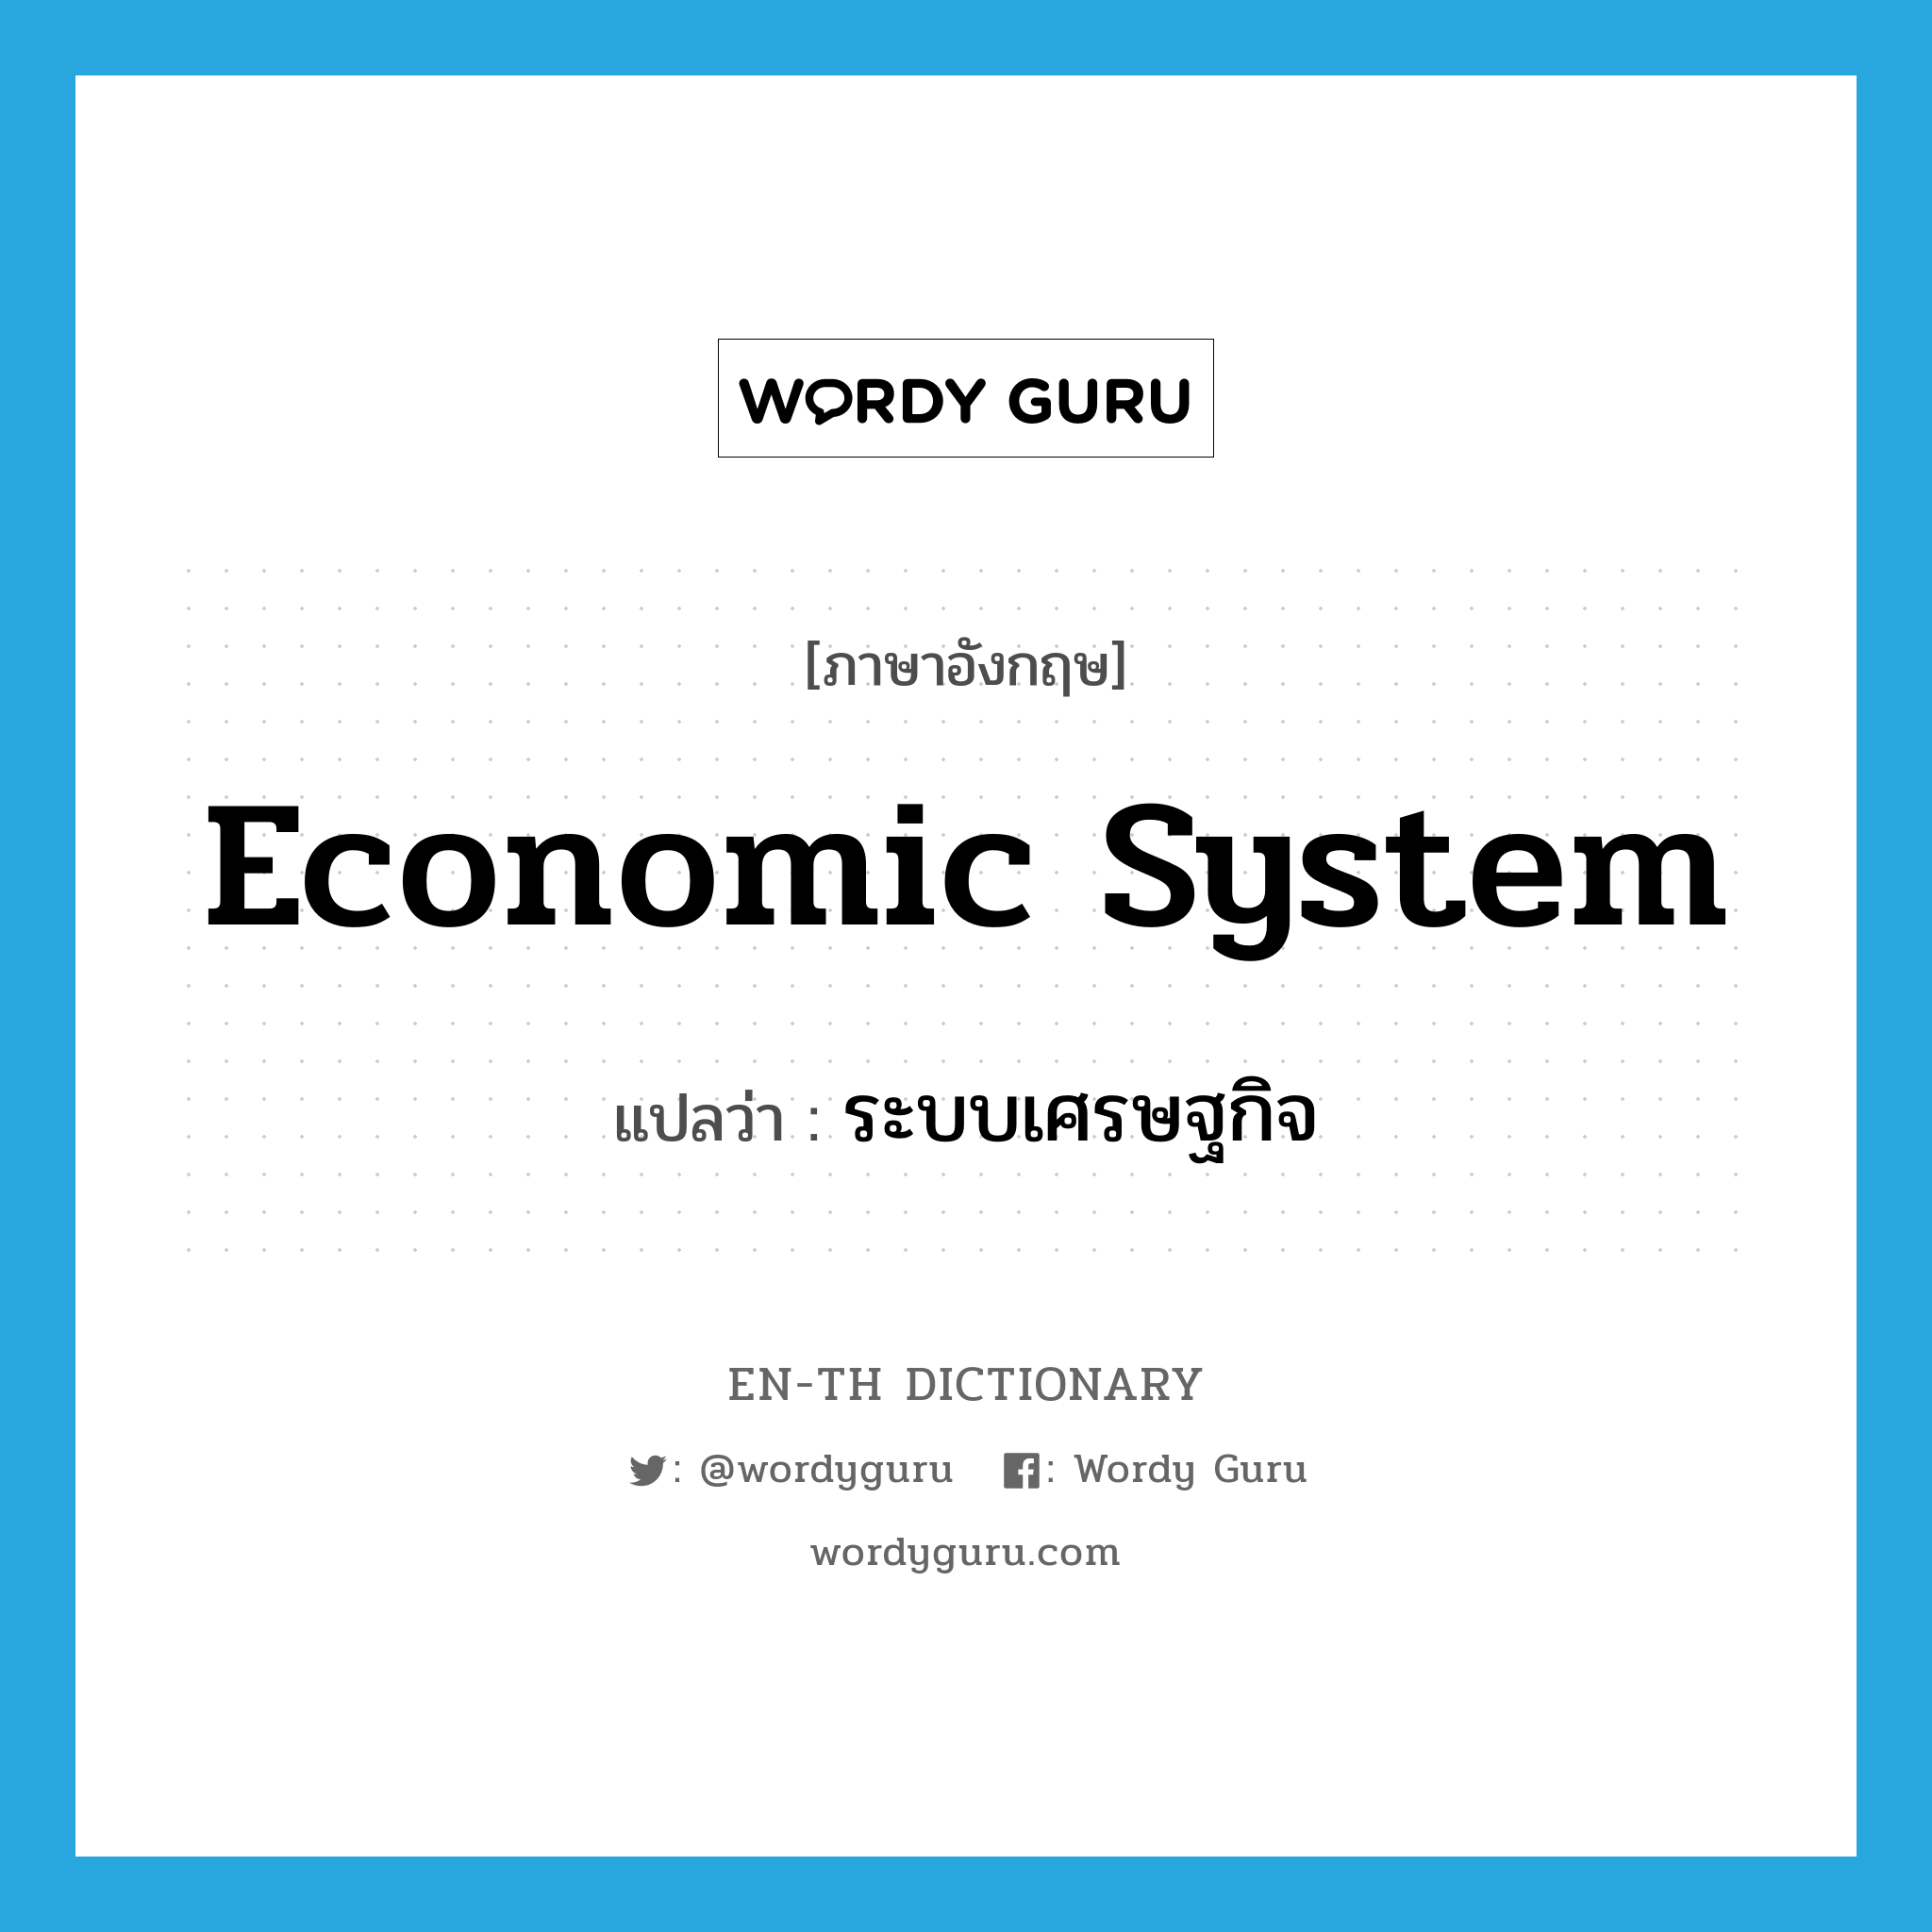 ระบบเศรษฐกิจ ภาษาอังกฤษ?, คำศัพท์ภาษาอังกฤษ ระบบเศรษฐกิจ แปลว่า economic system ประเภท N หมวด N